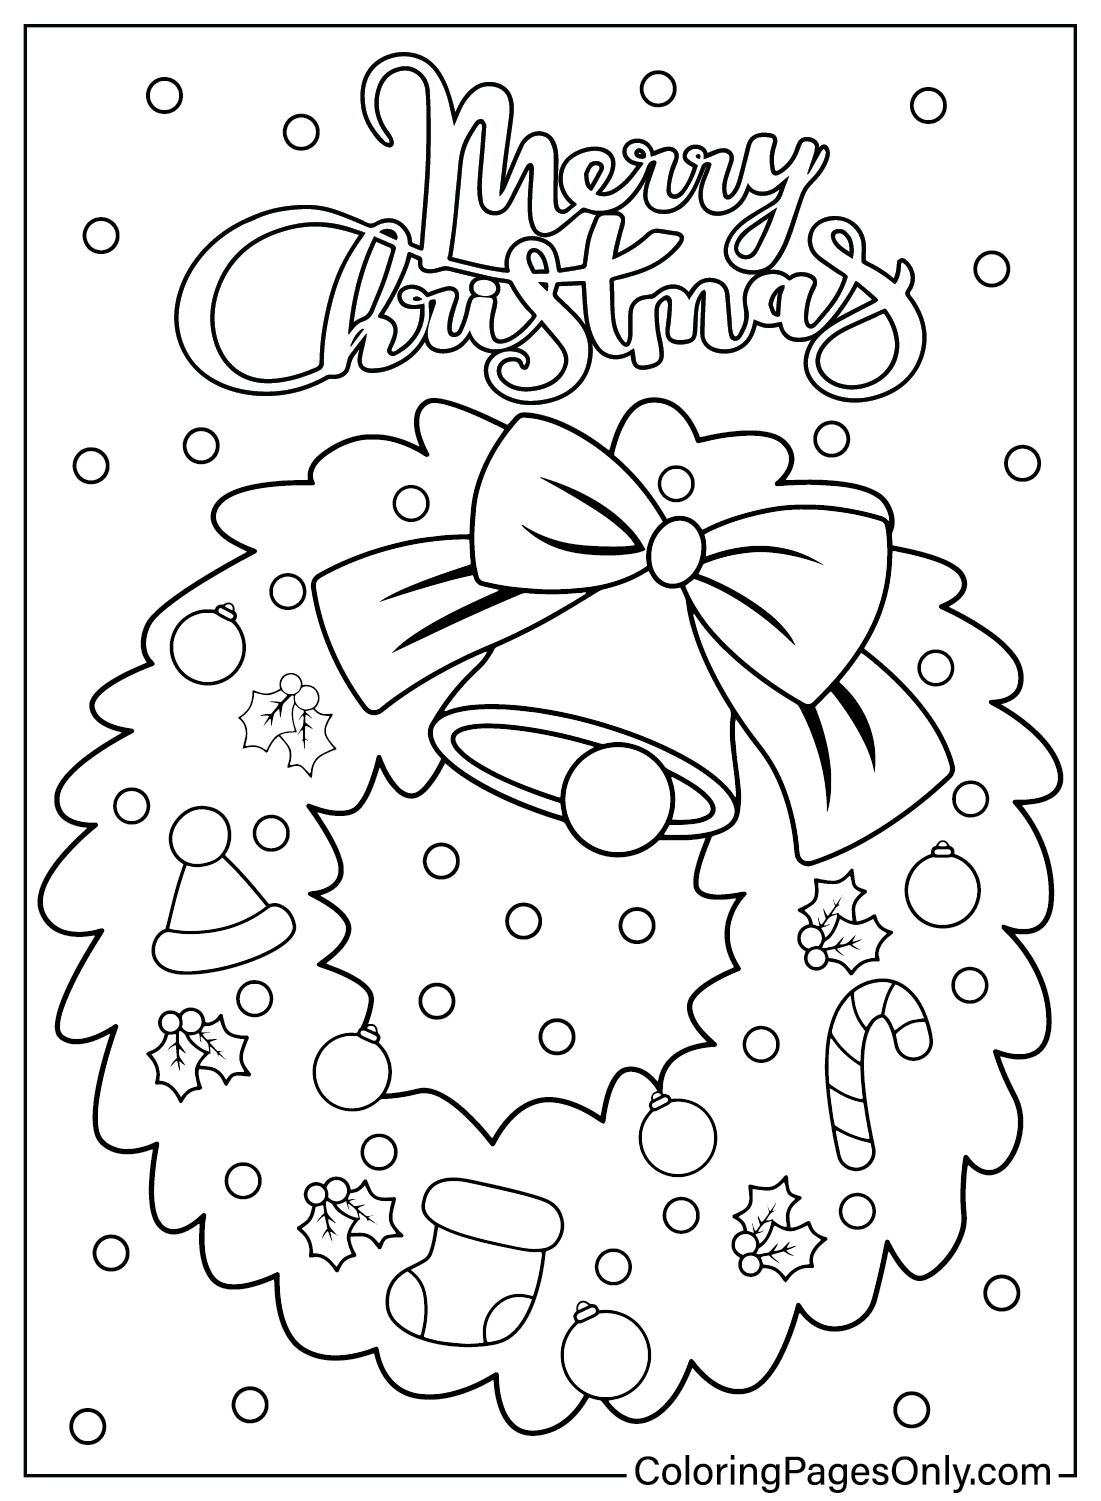 Раскраска Рождественский венок из мультфильма «Рождественский венок» для печати